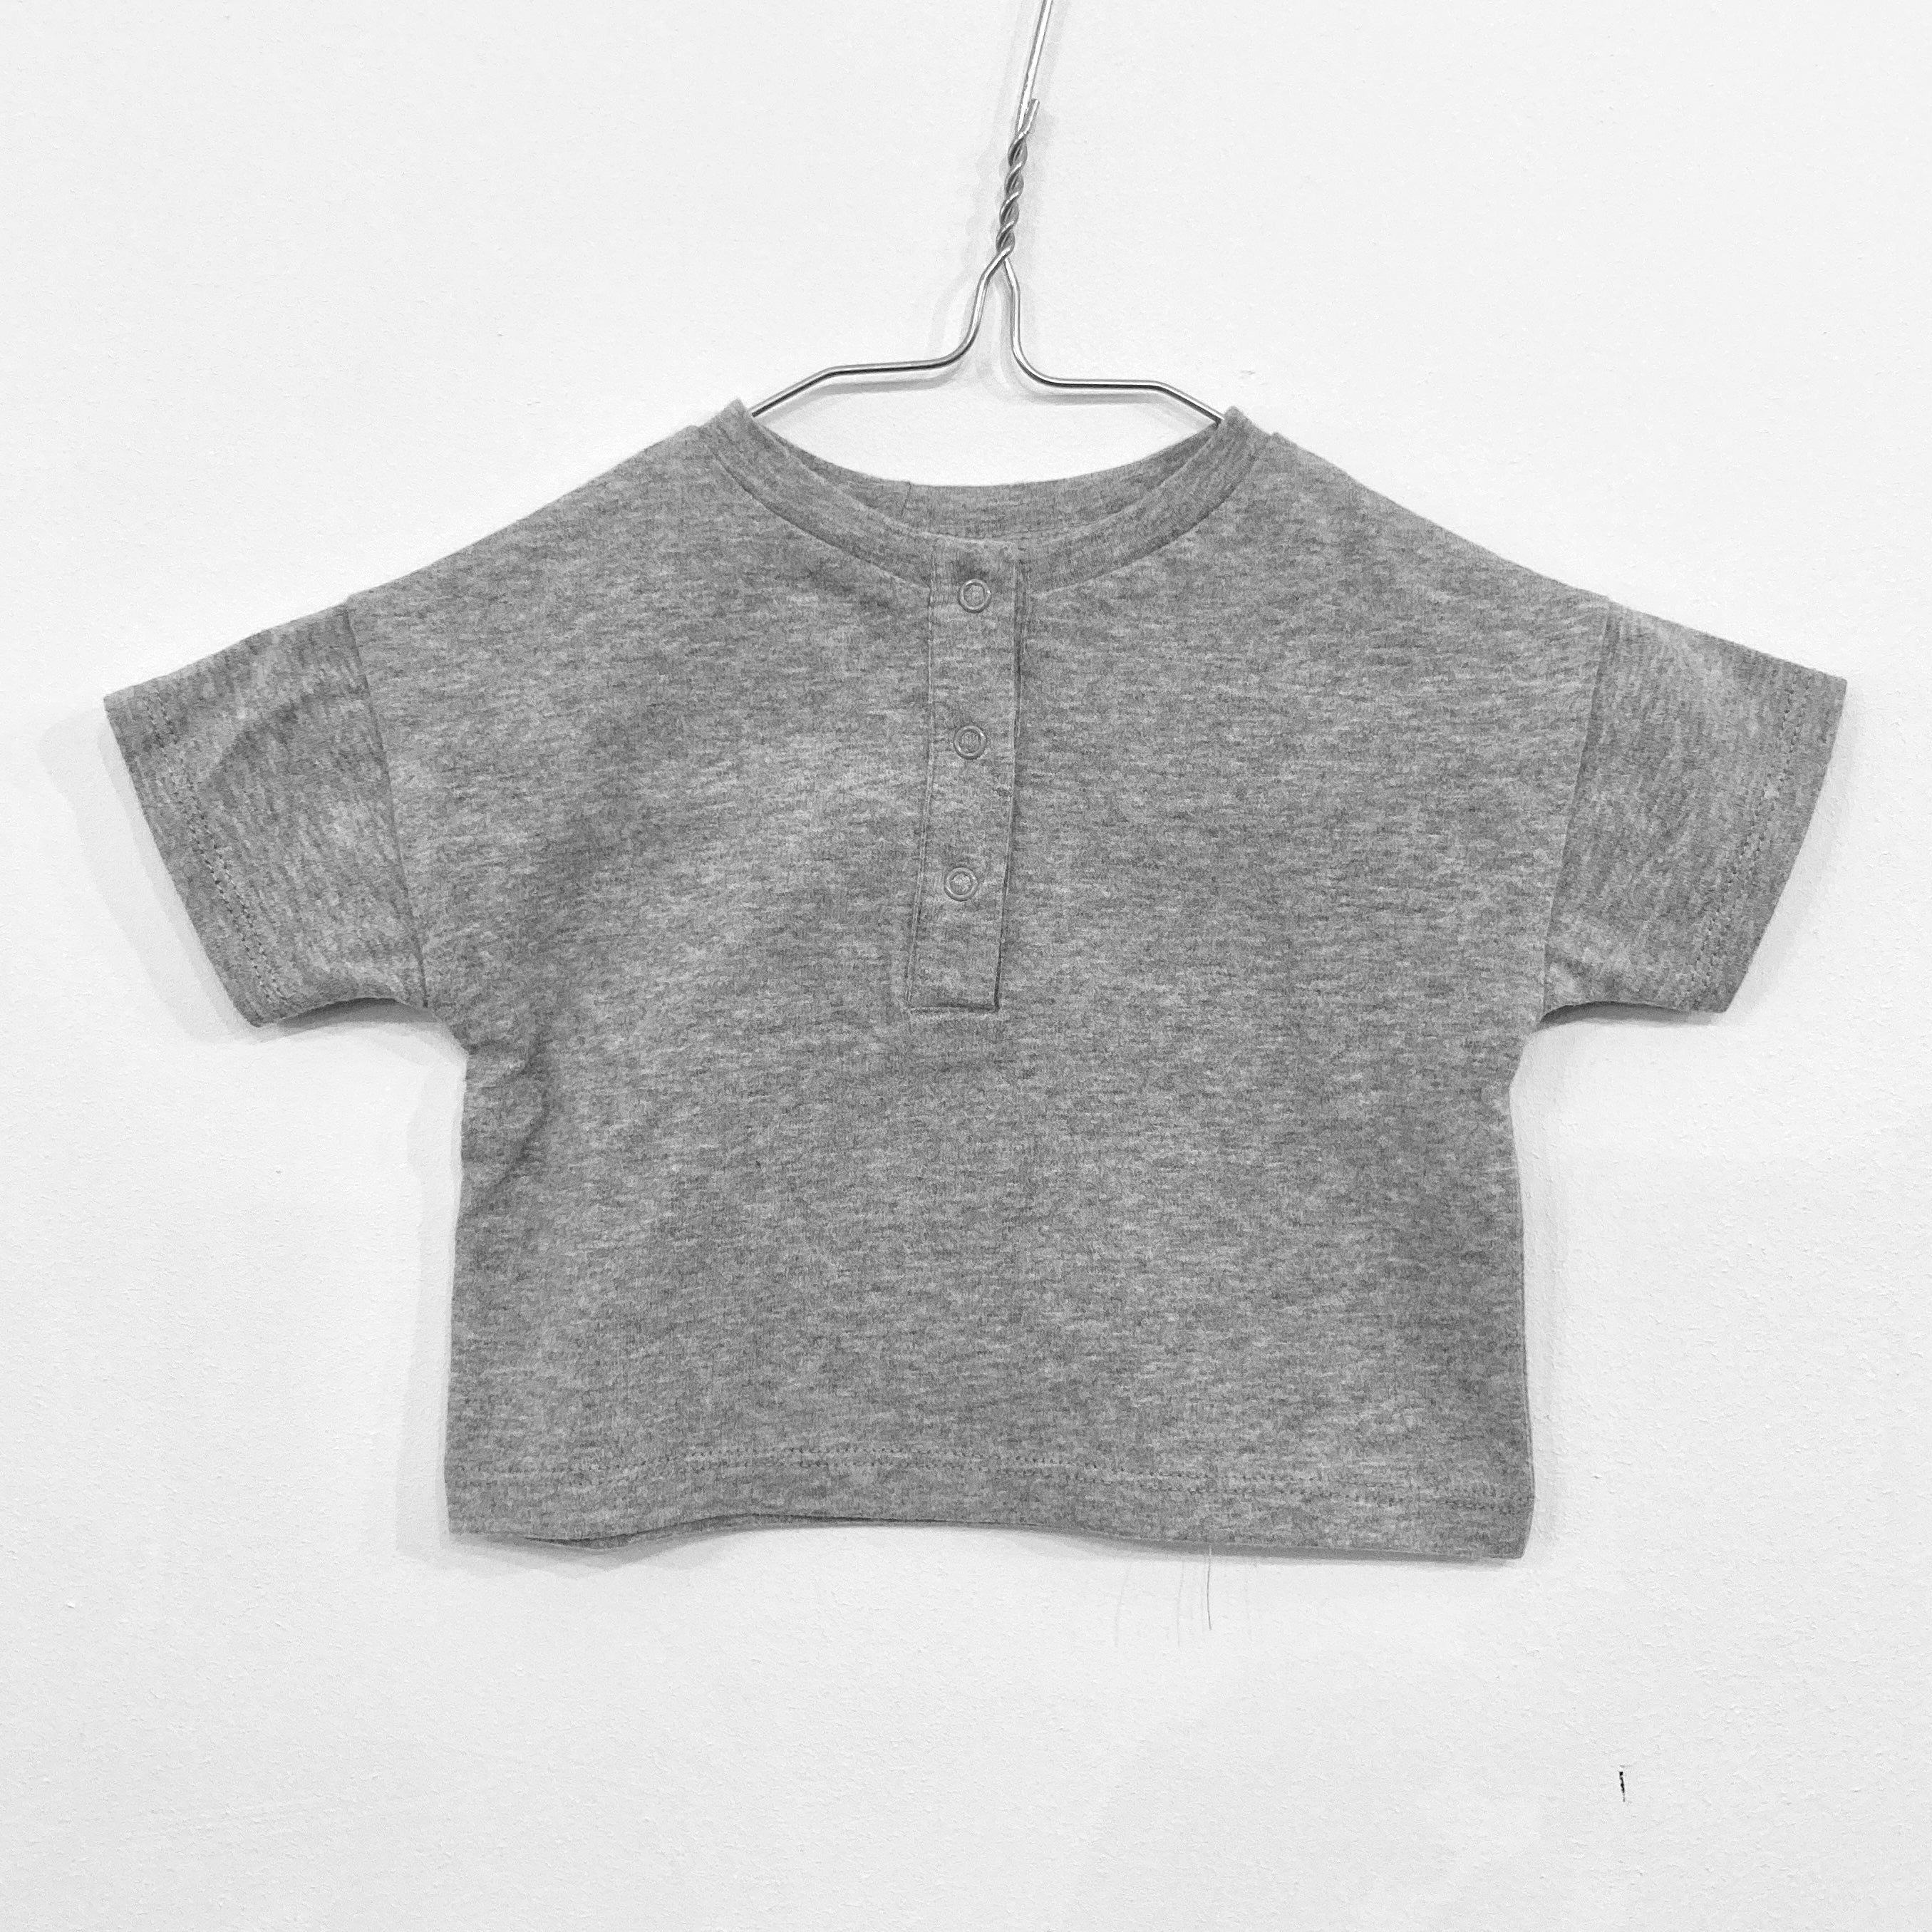 Tee Baby Short Sleeves Henley Grey Melange - Sample